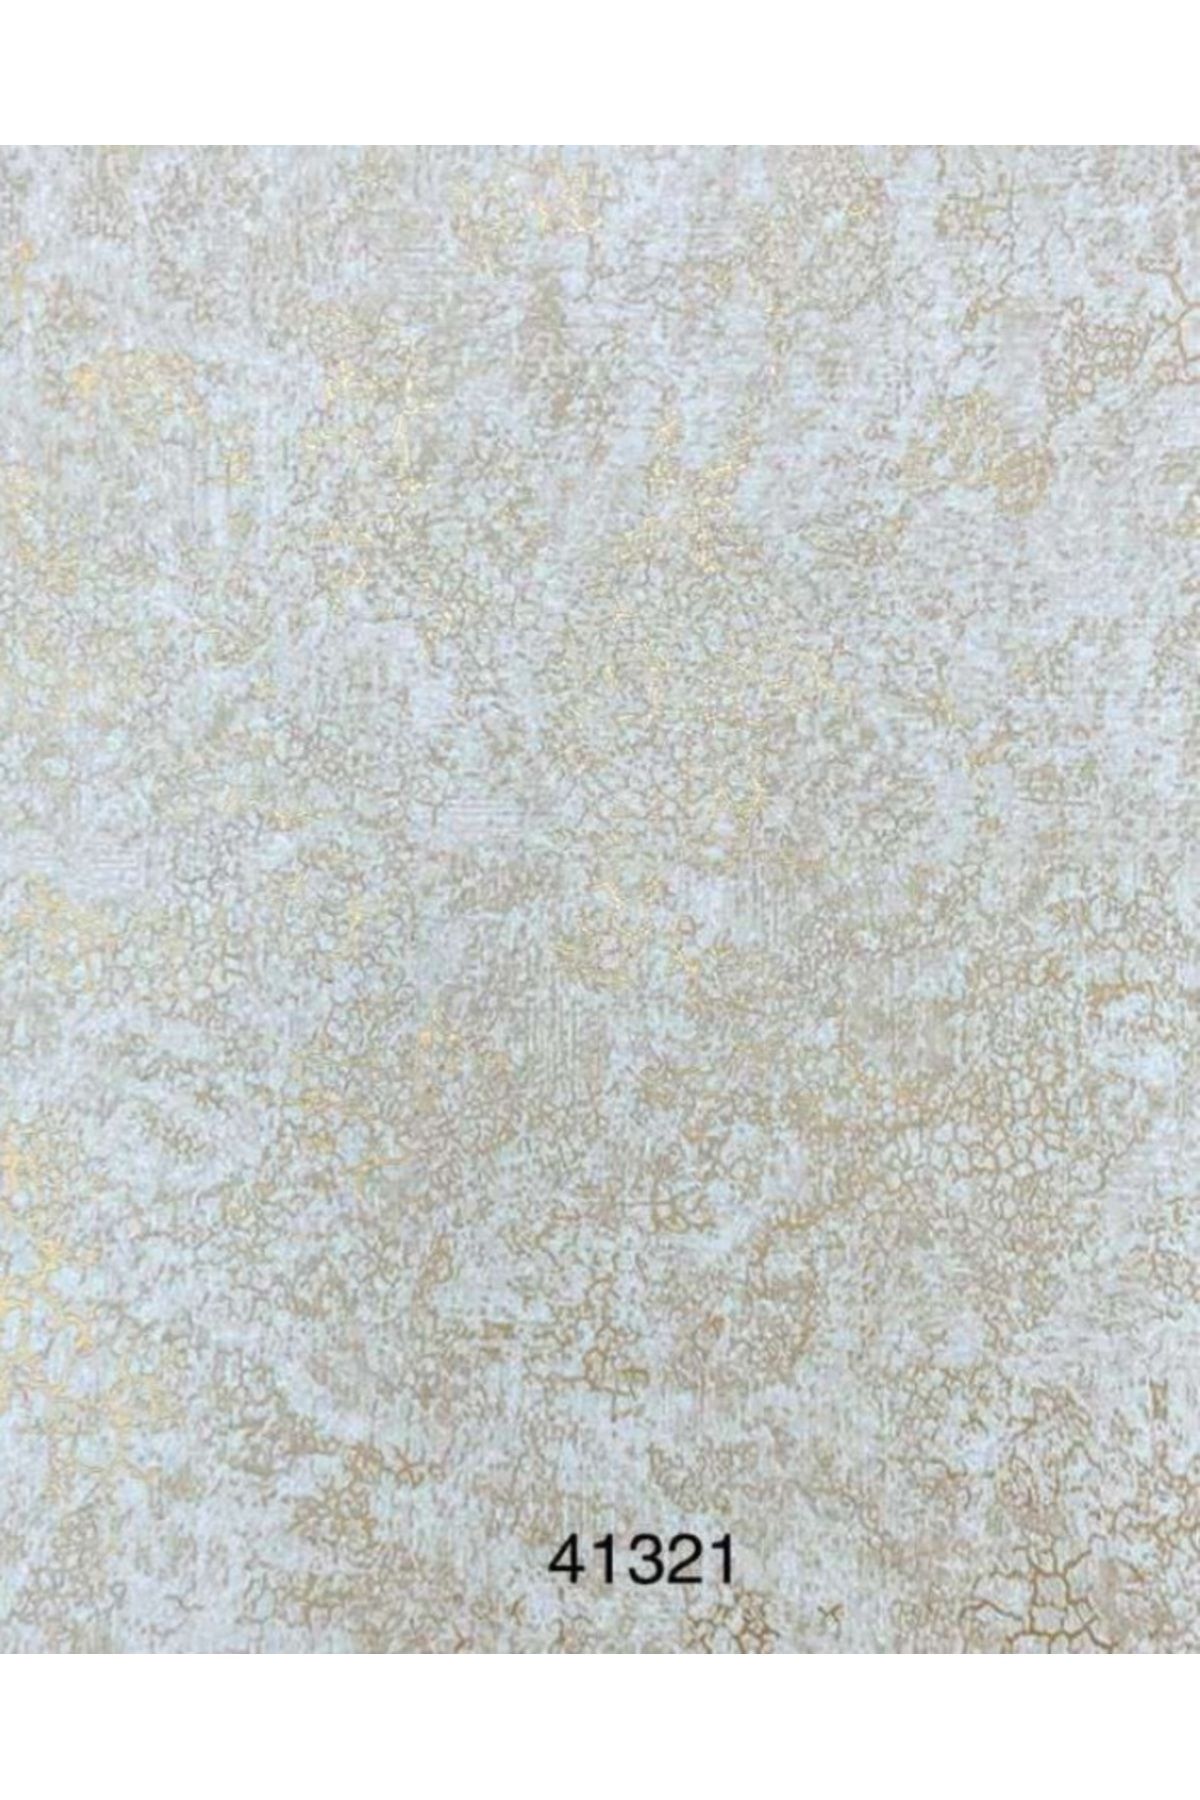 oskar Gold Damarlı Hafif Kabartmalı Duvar Kağıdı 16m2